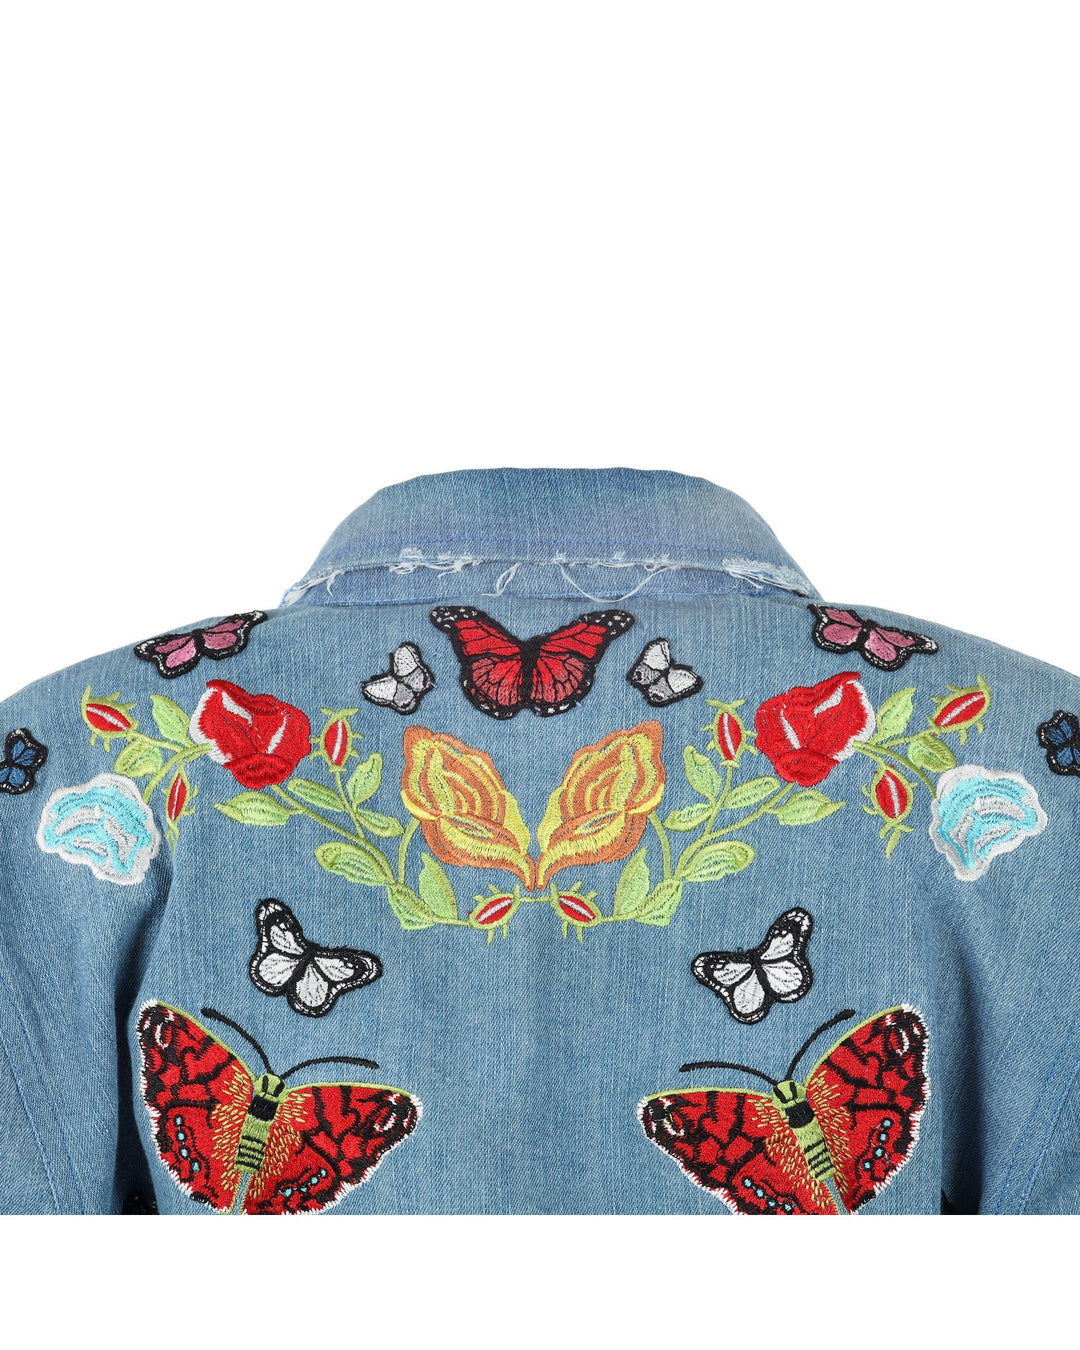 Butterfly Bomb Jacket - Denim by Meghan Fabulous